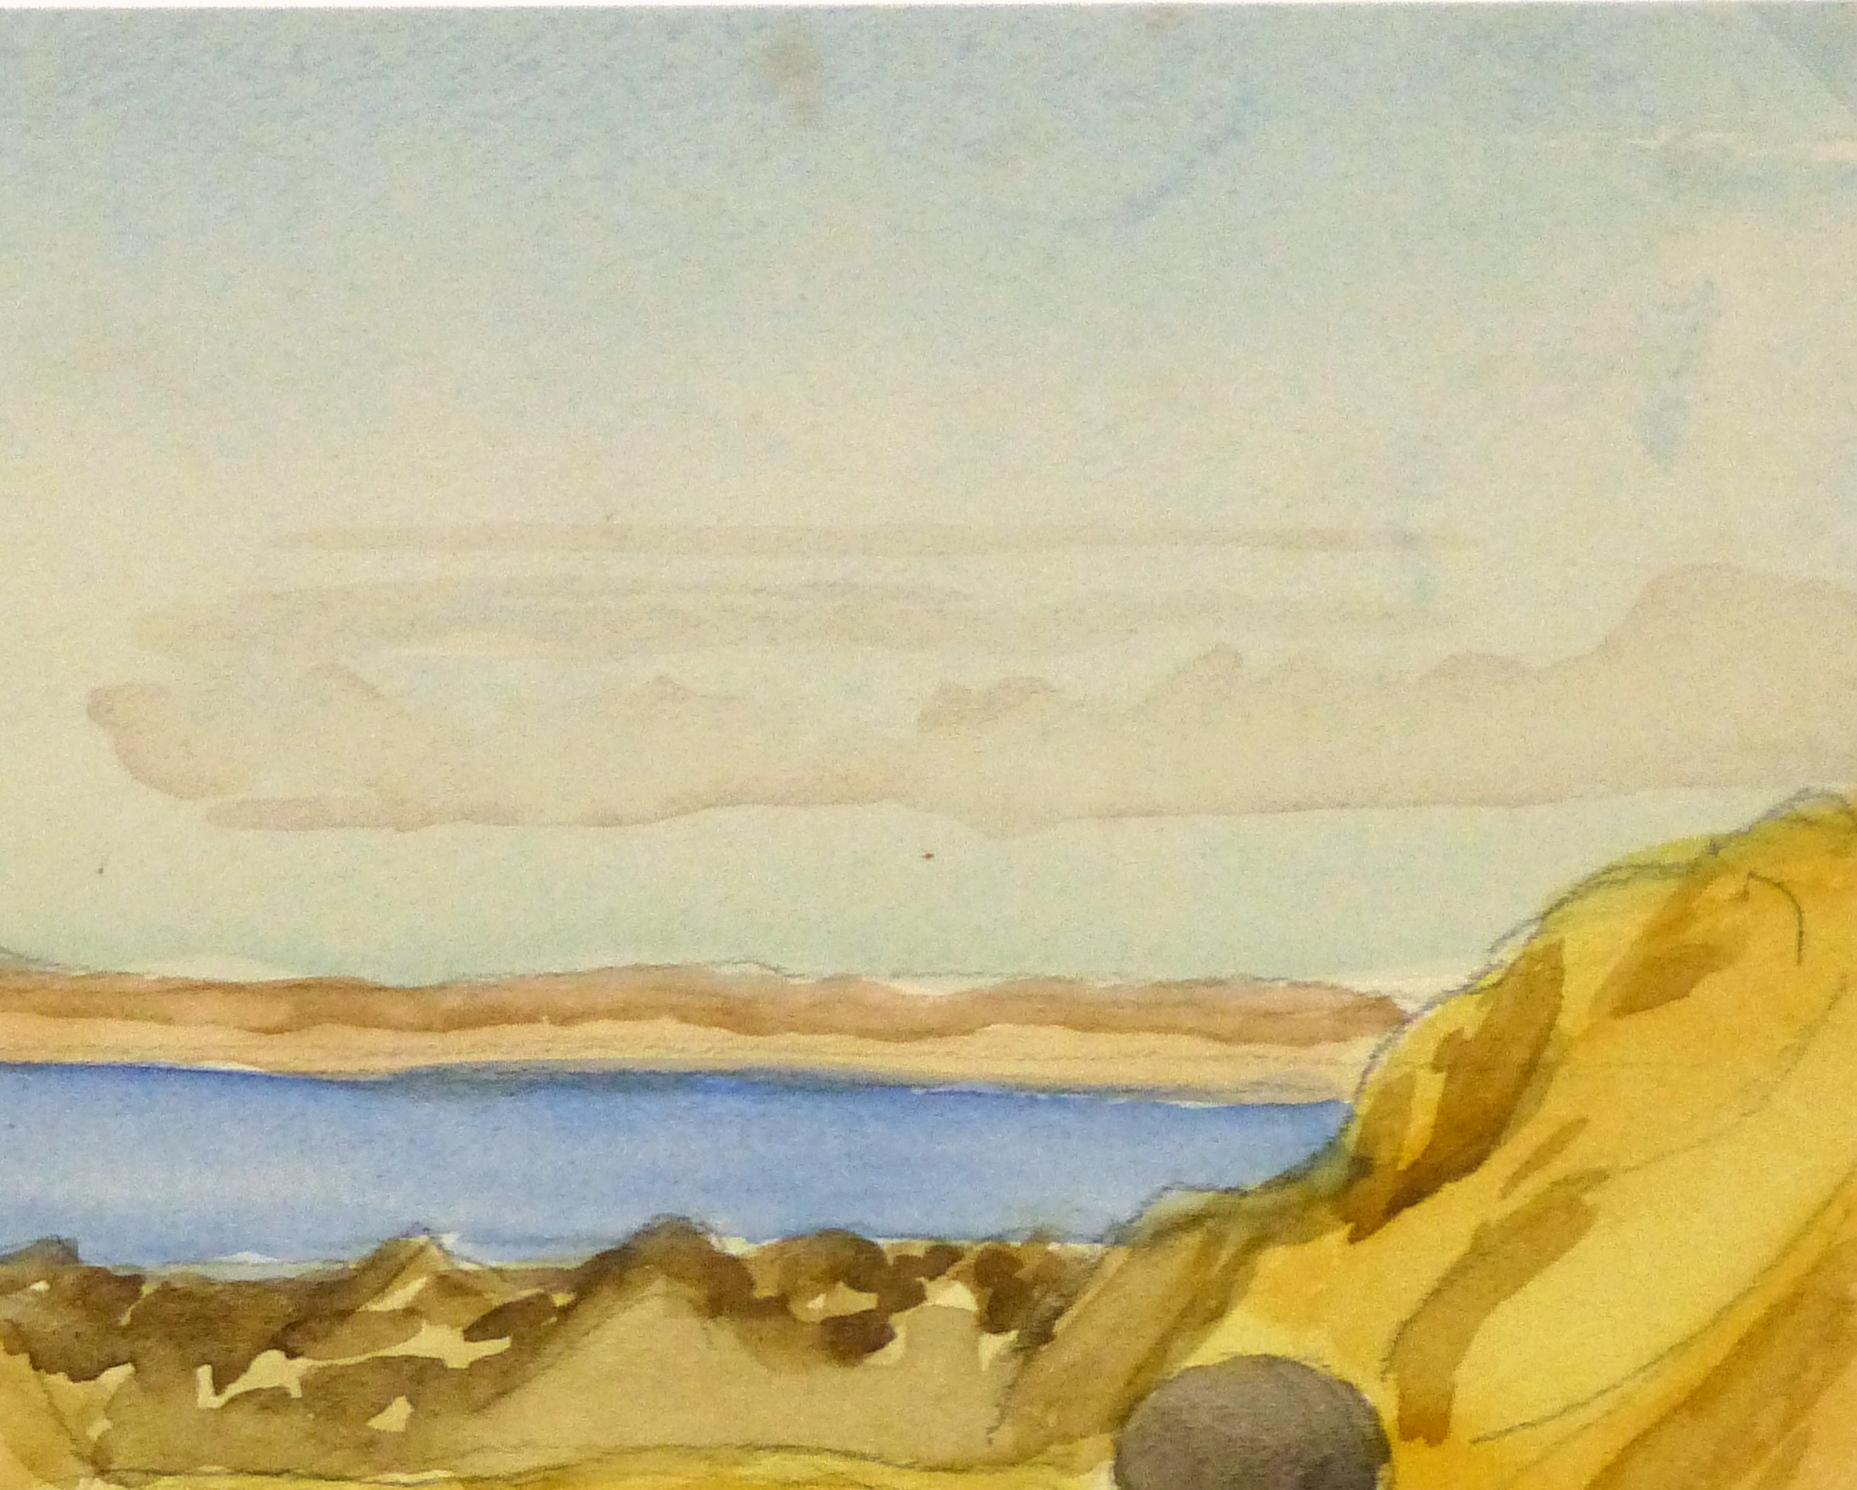 Lake Mead Watercolor - Beige Figurative Art by Unknown